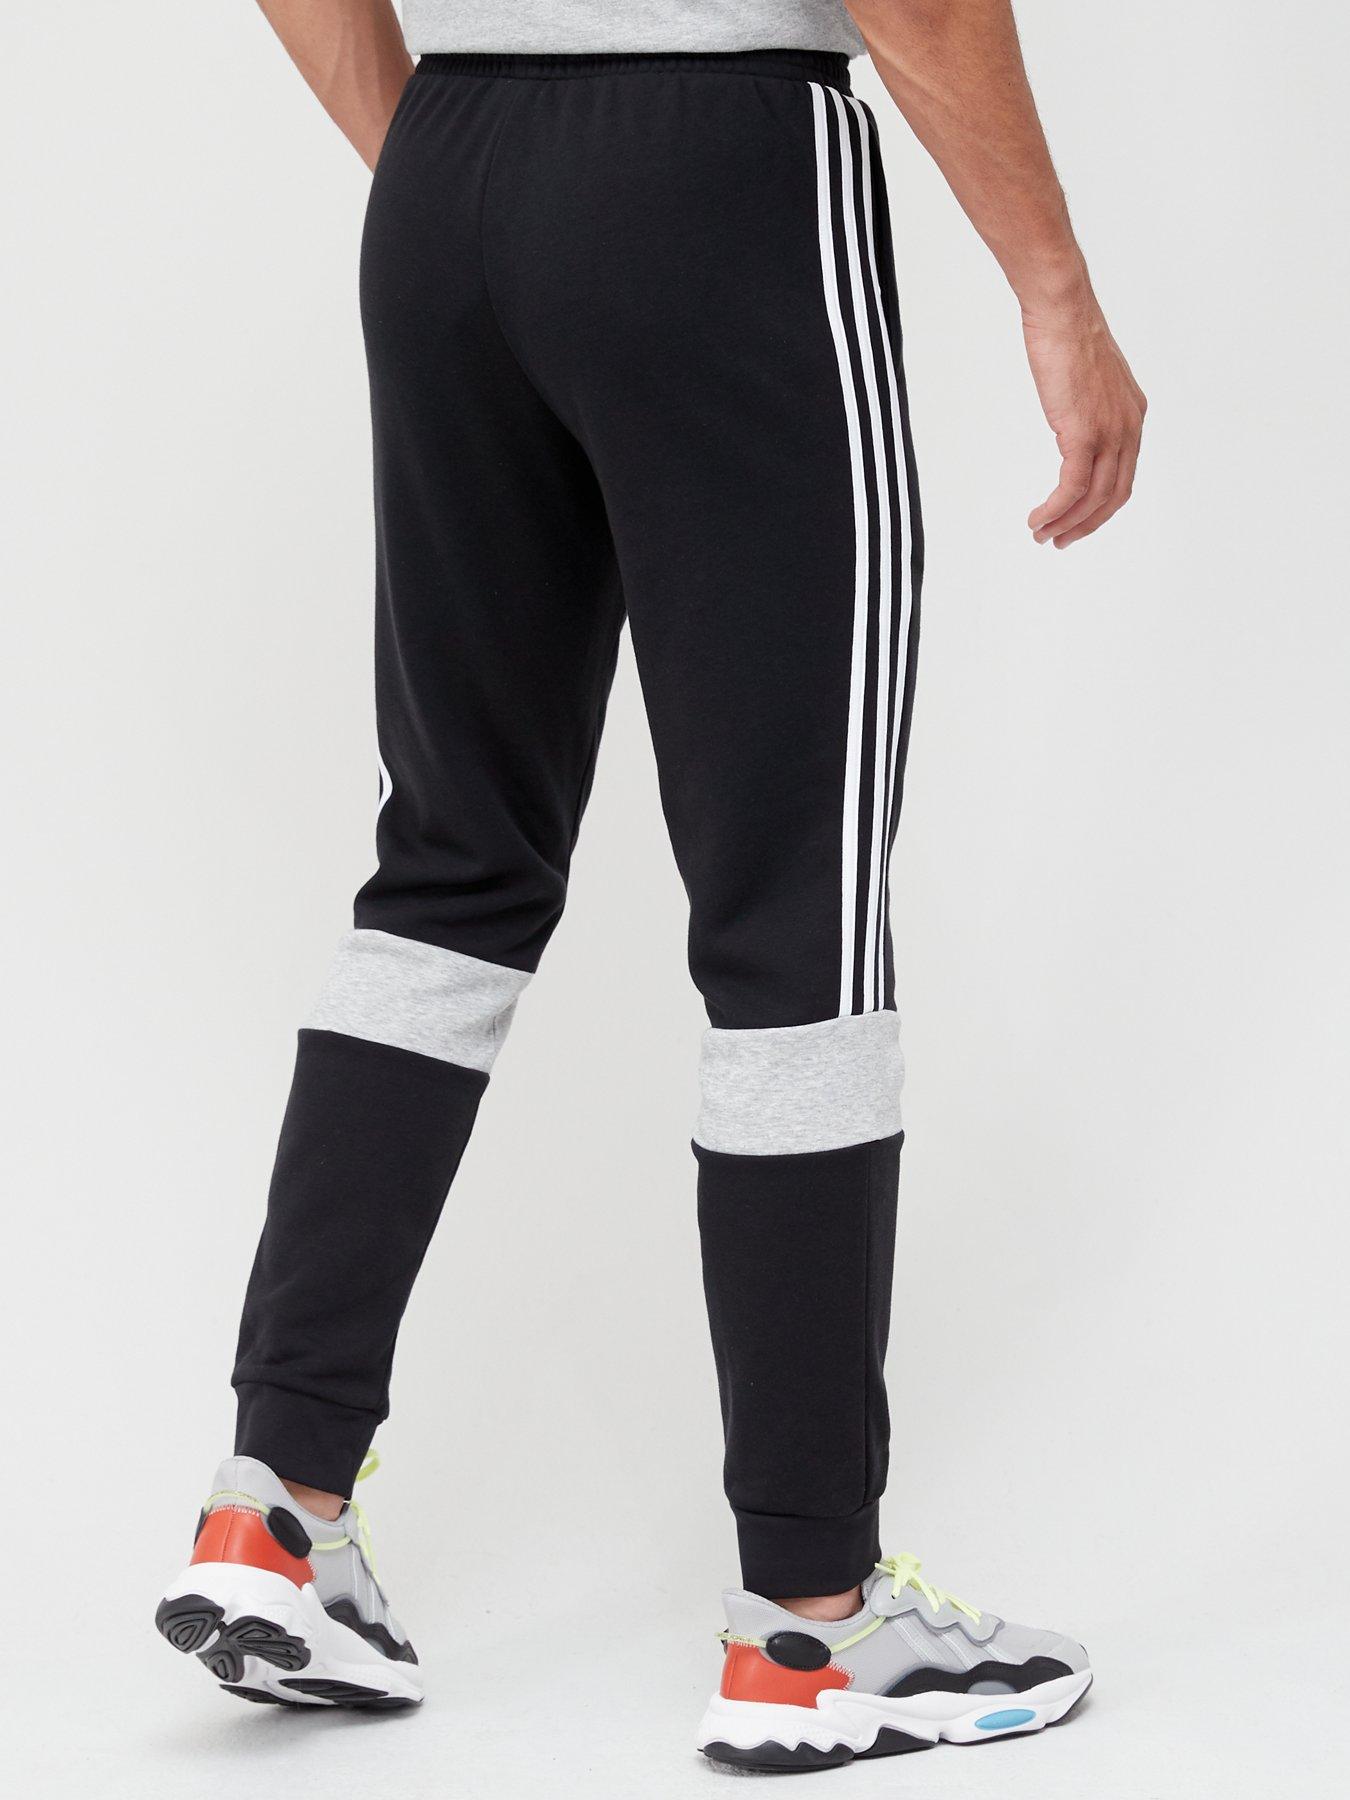 Joggers Colourblock Sweat Pants - Black/Grey